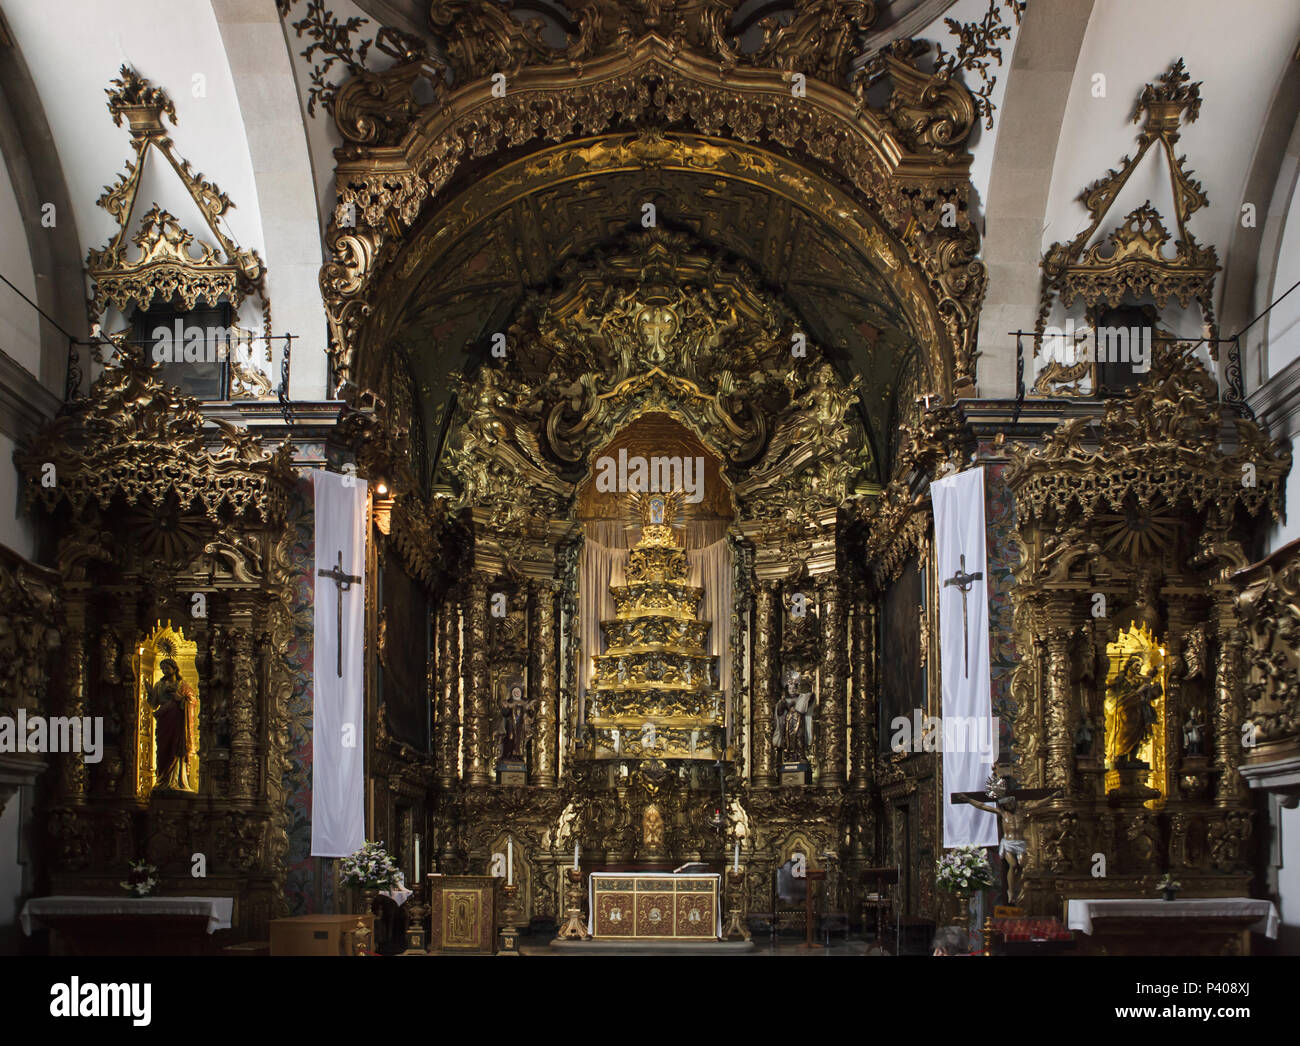 Intérieur de l'église des Carmes (Igreja dos Carmelitas) à Porto, Portugal. L'église a été construite dans la première moitié du 17ème siècle dans le style baroque. Banque D'Images